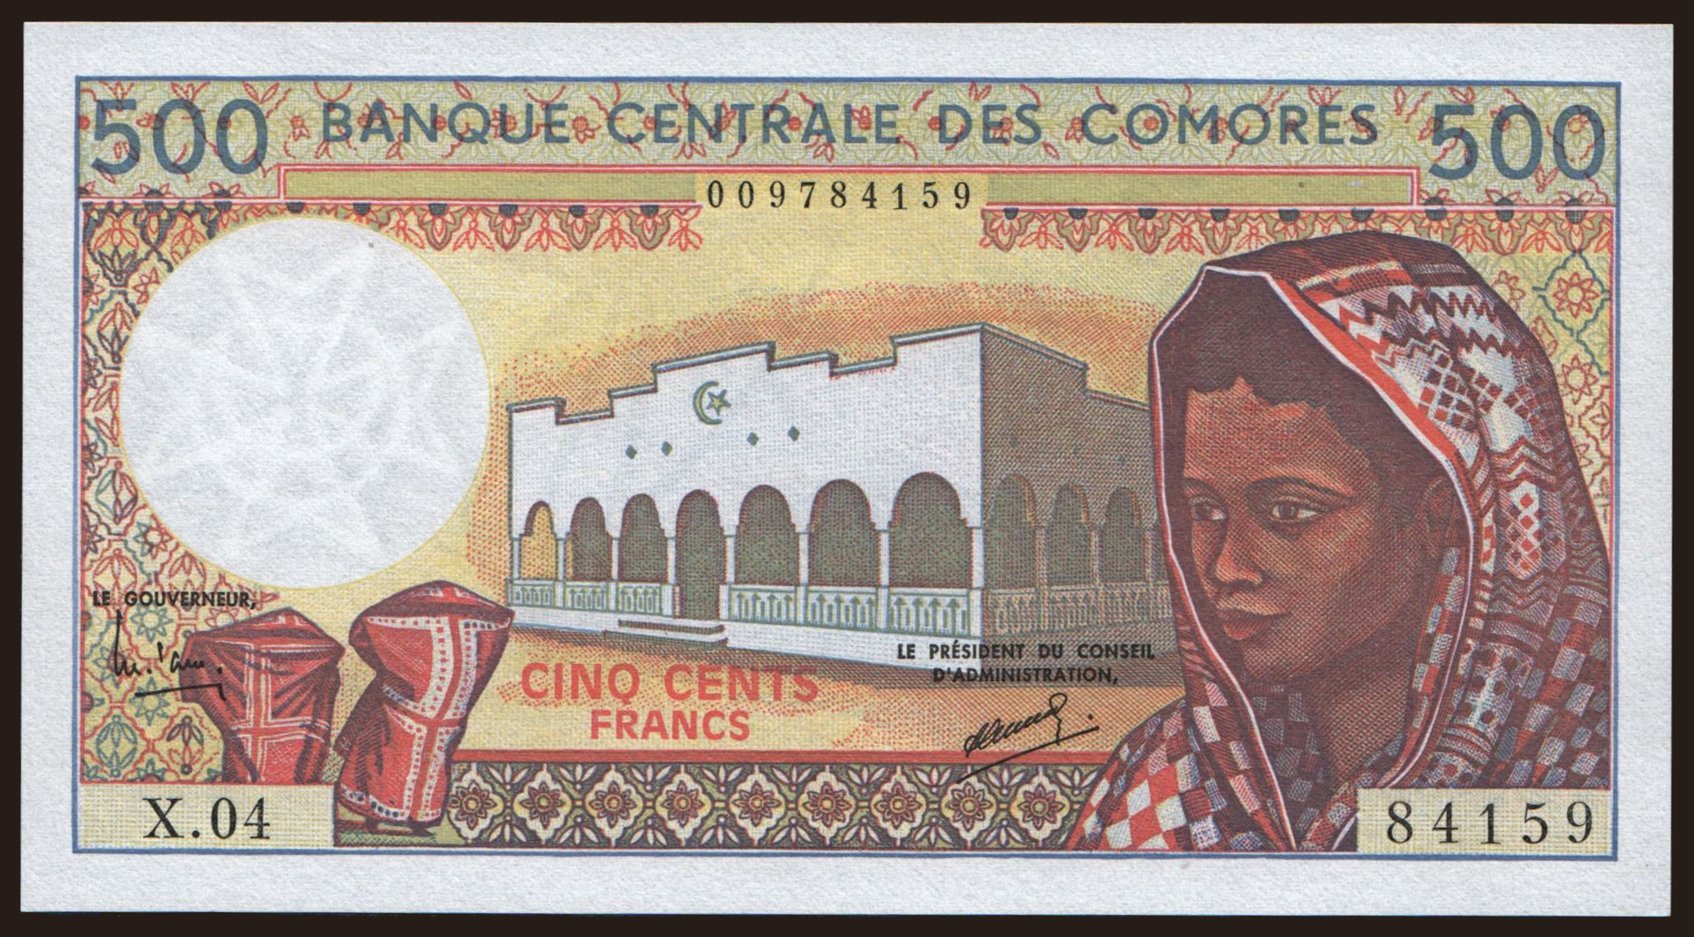 500 francs, 1986